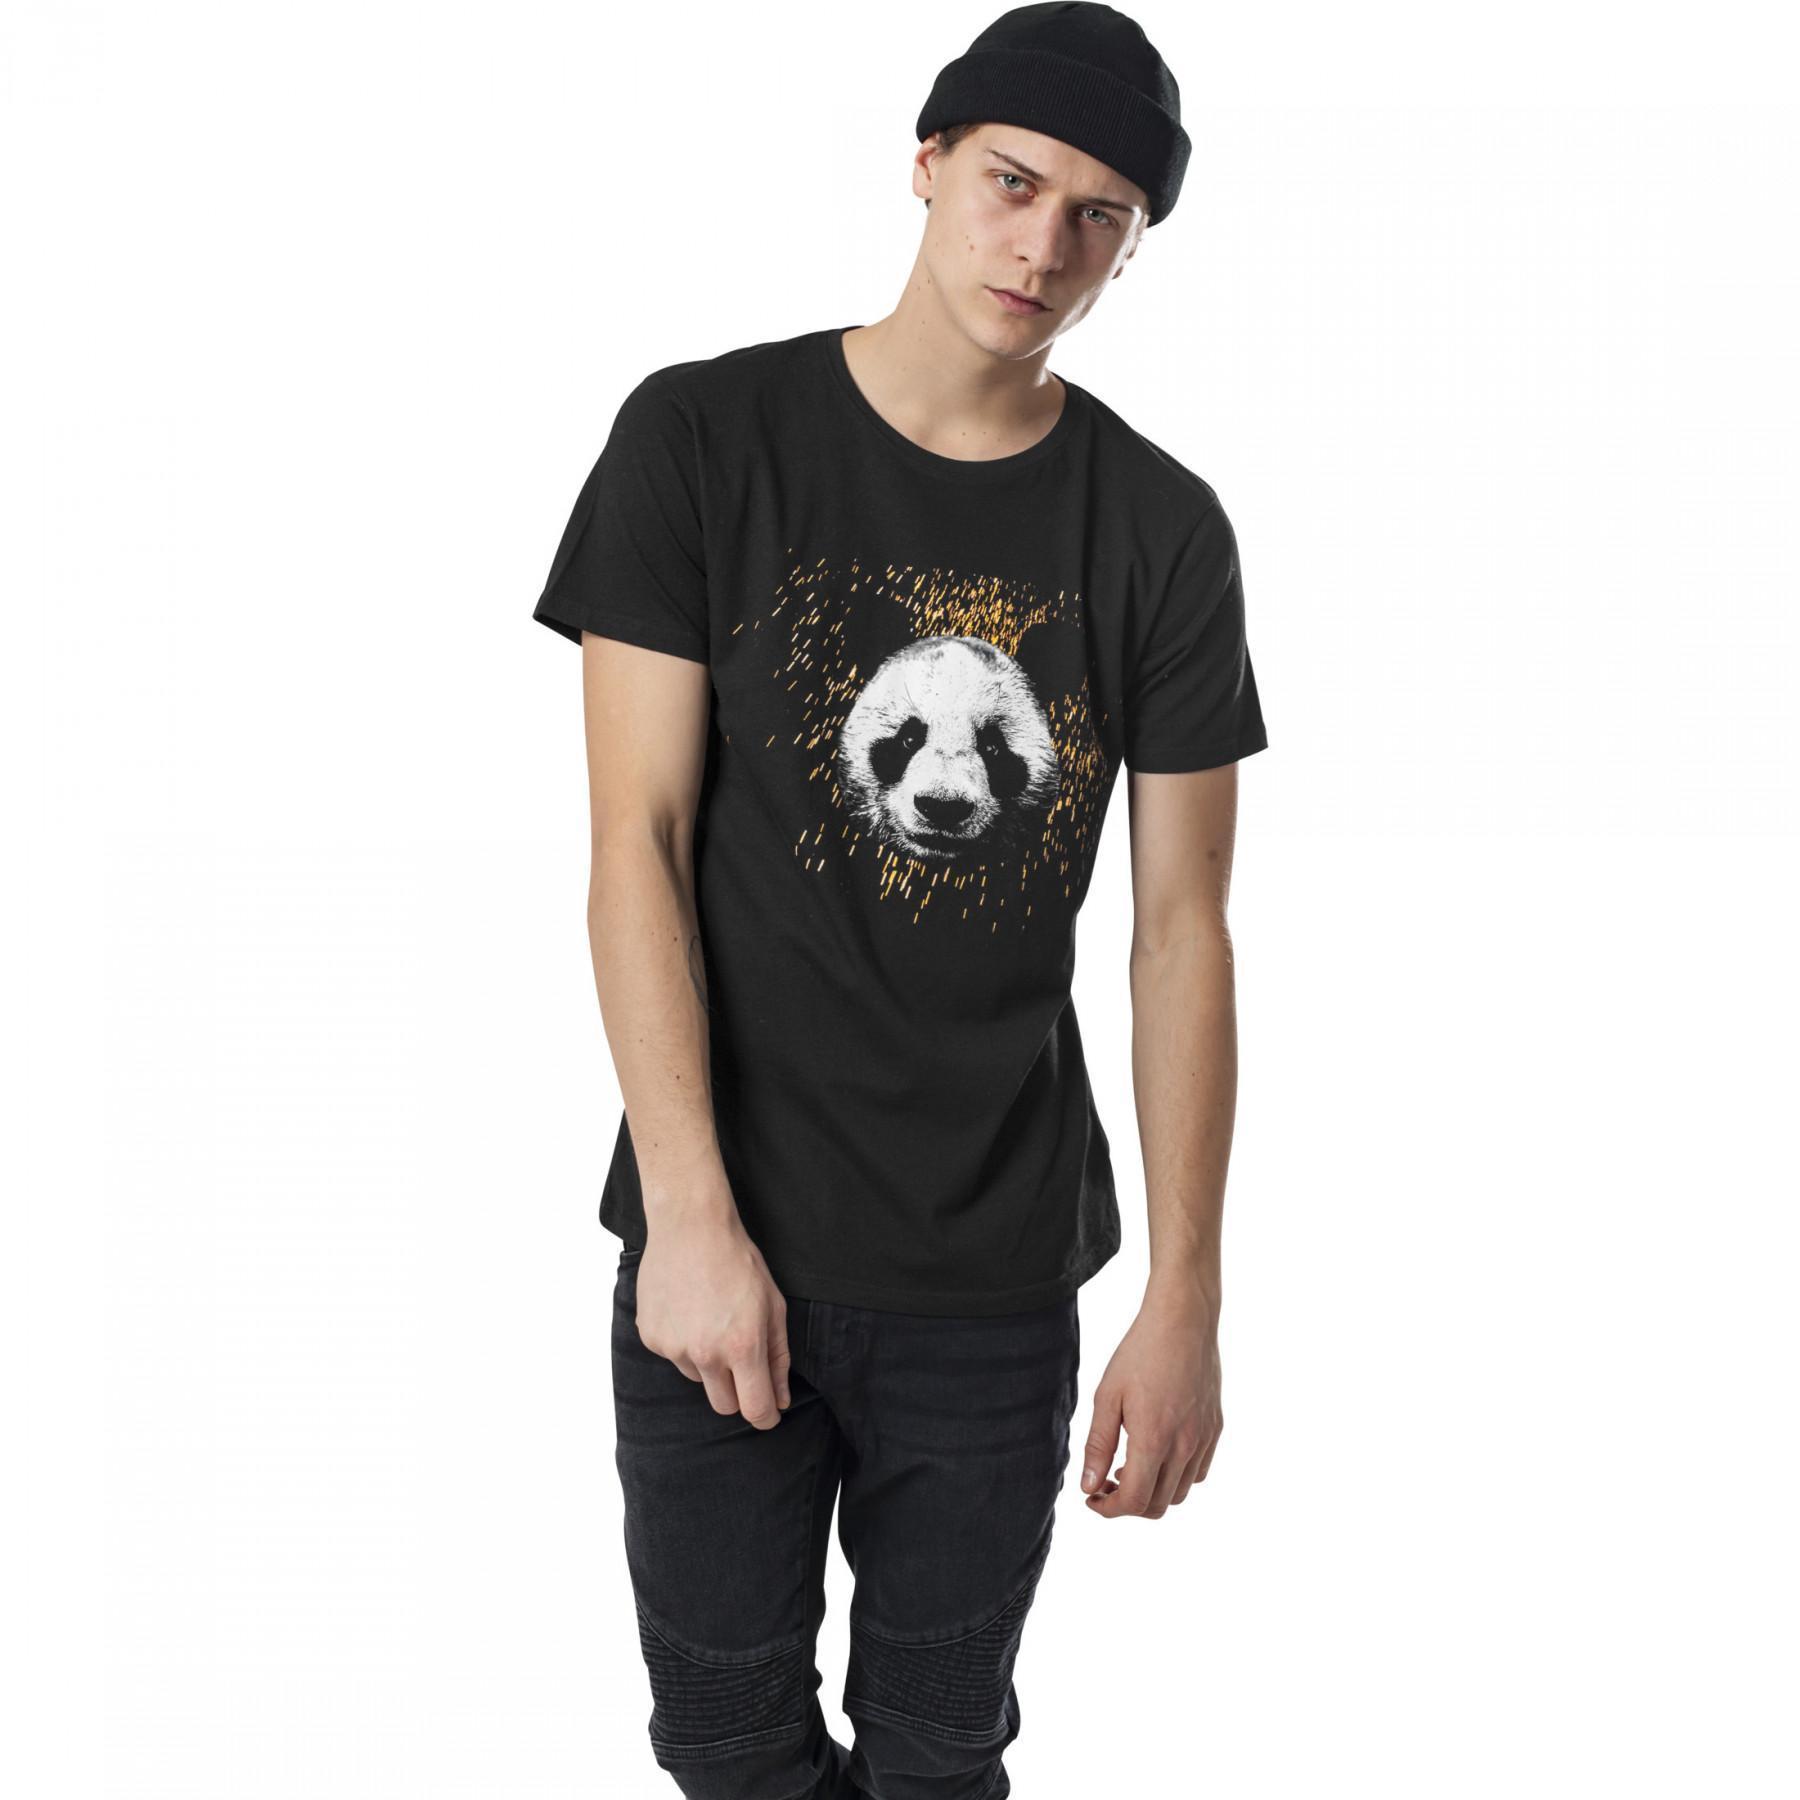 T-shirt Urban Klassieke degner panda